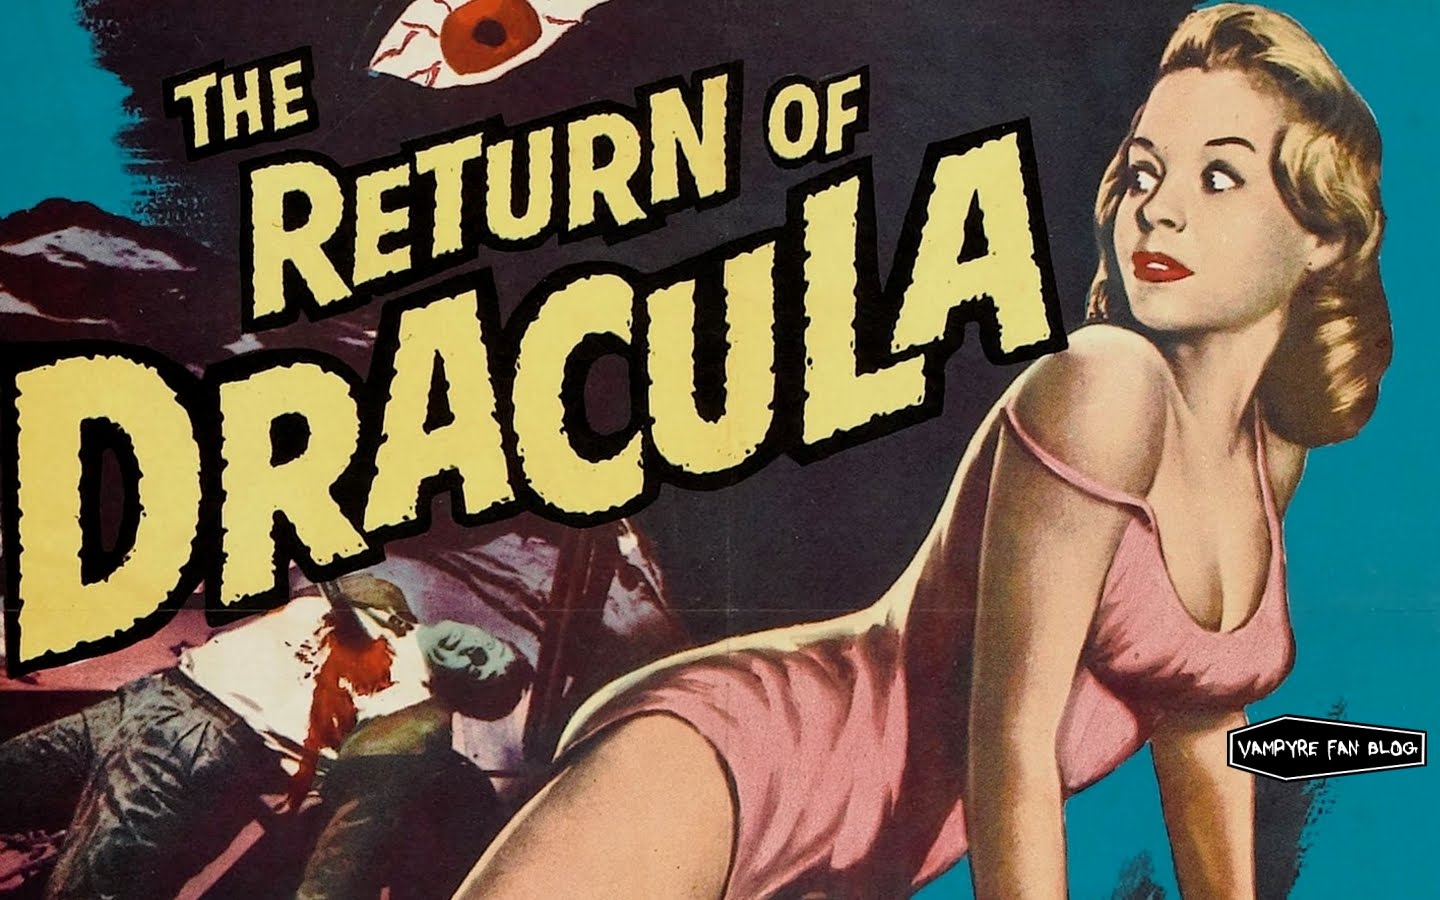  Fan DRACULA VAMPIRE WALLPAPERS   Vintage Monster B Movie Posters